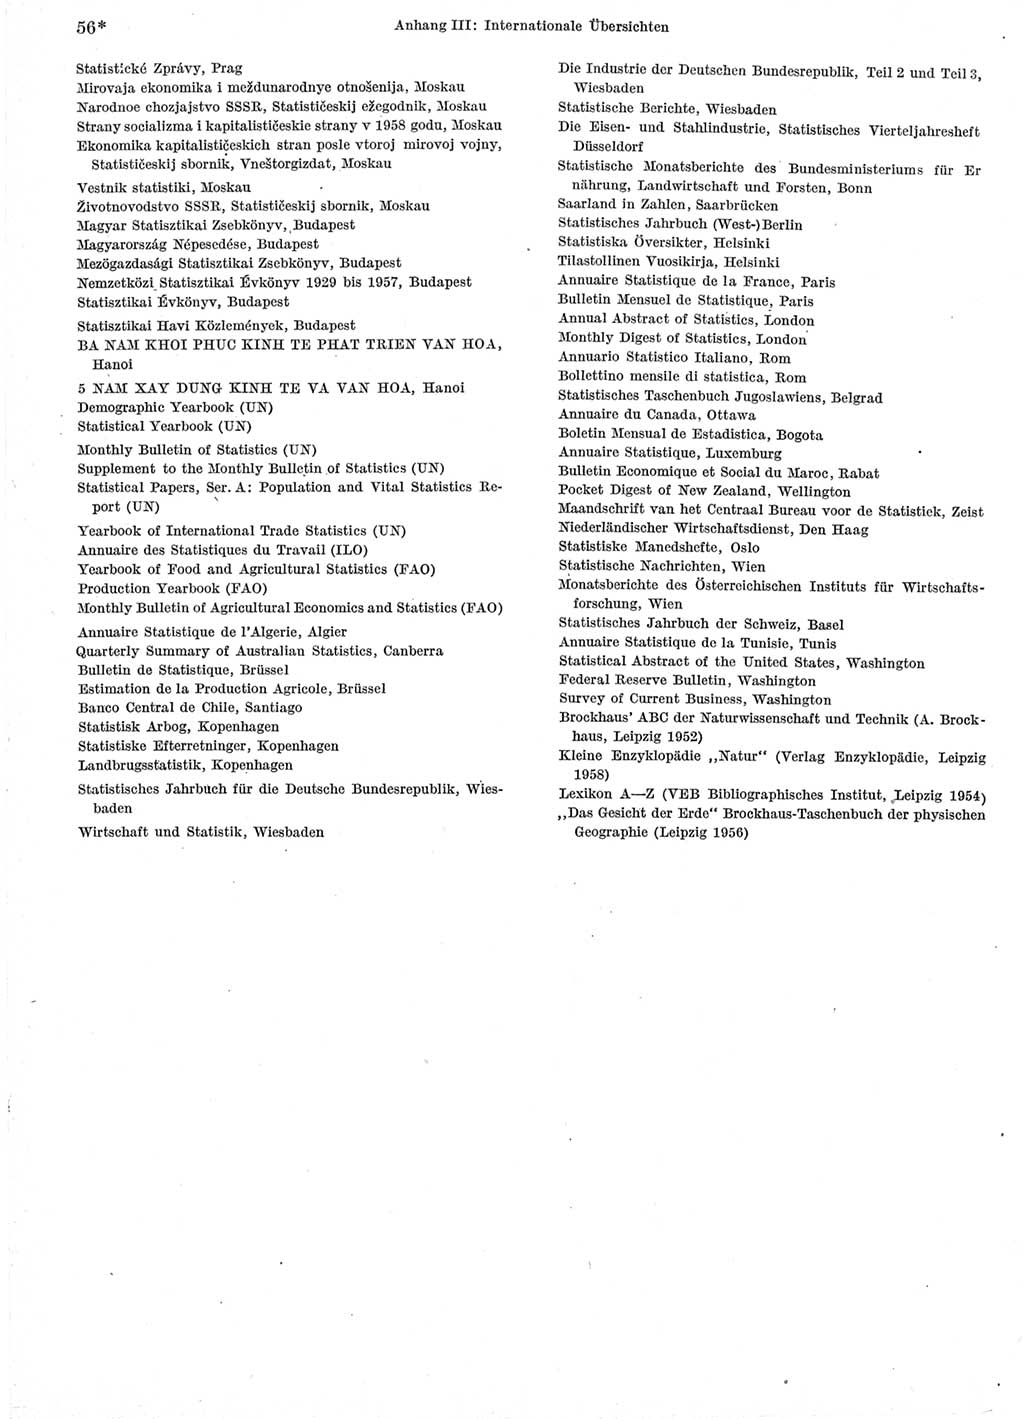 Statistisches Jahrbuch der Deutschen Demokratischen Republik (DDR) 1960-1961, Seite 56 (Stat. Jb. DDR 1960-1961, S. 56)